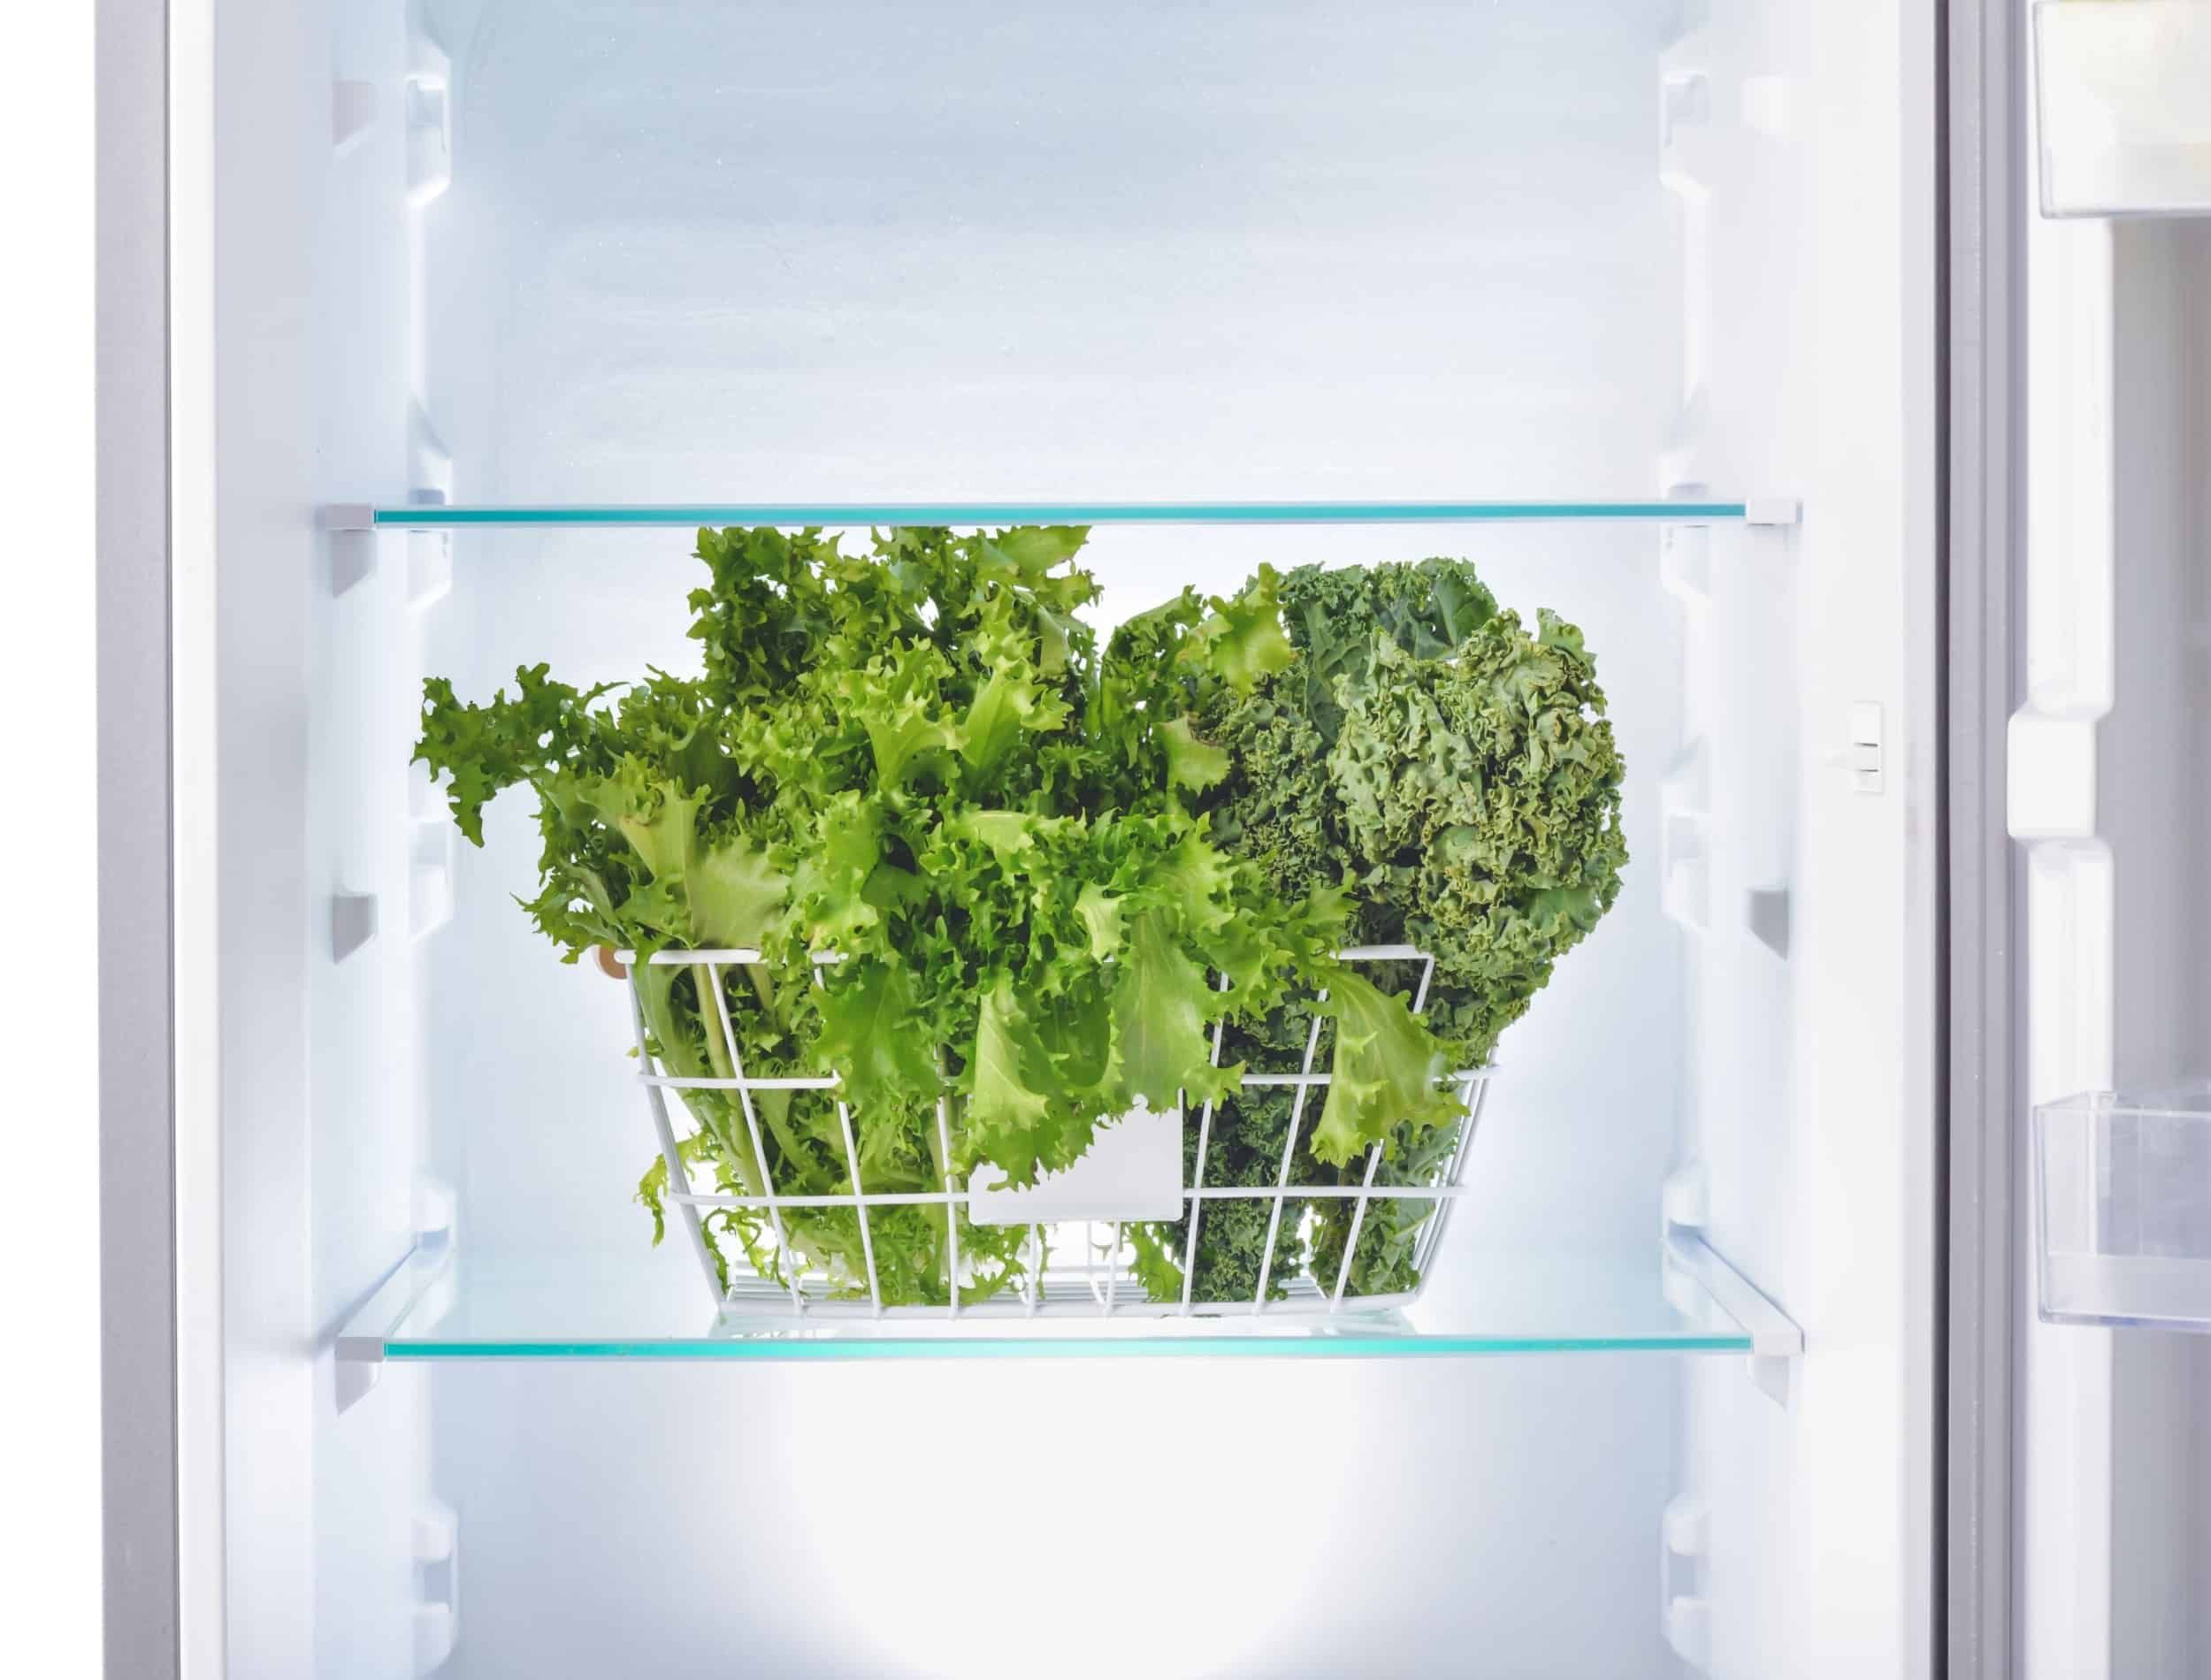 Basket with fresh lettuce in empty fridge